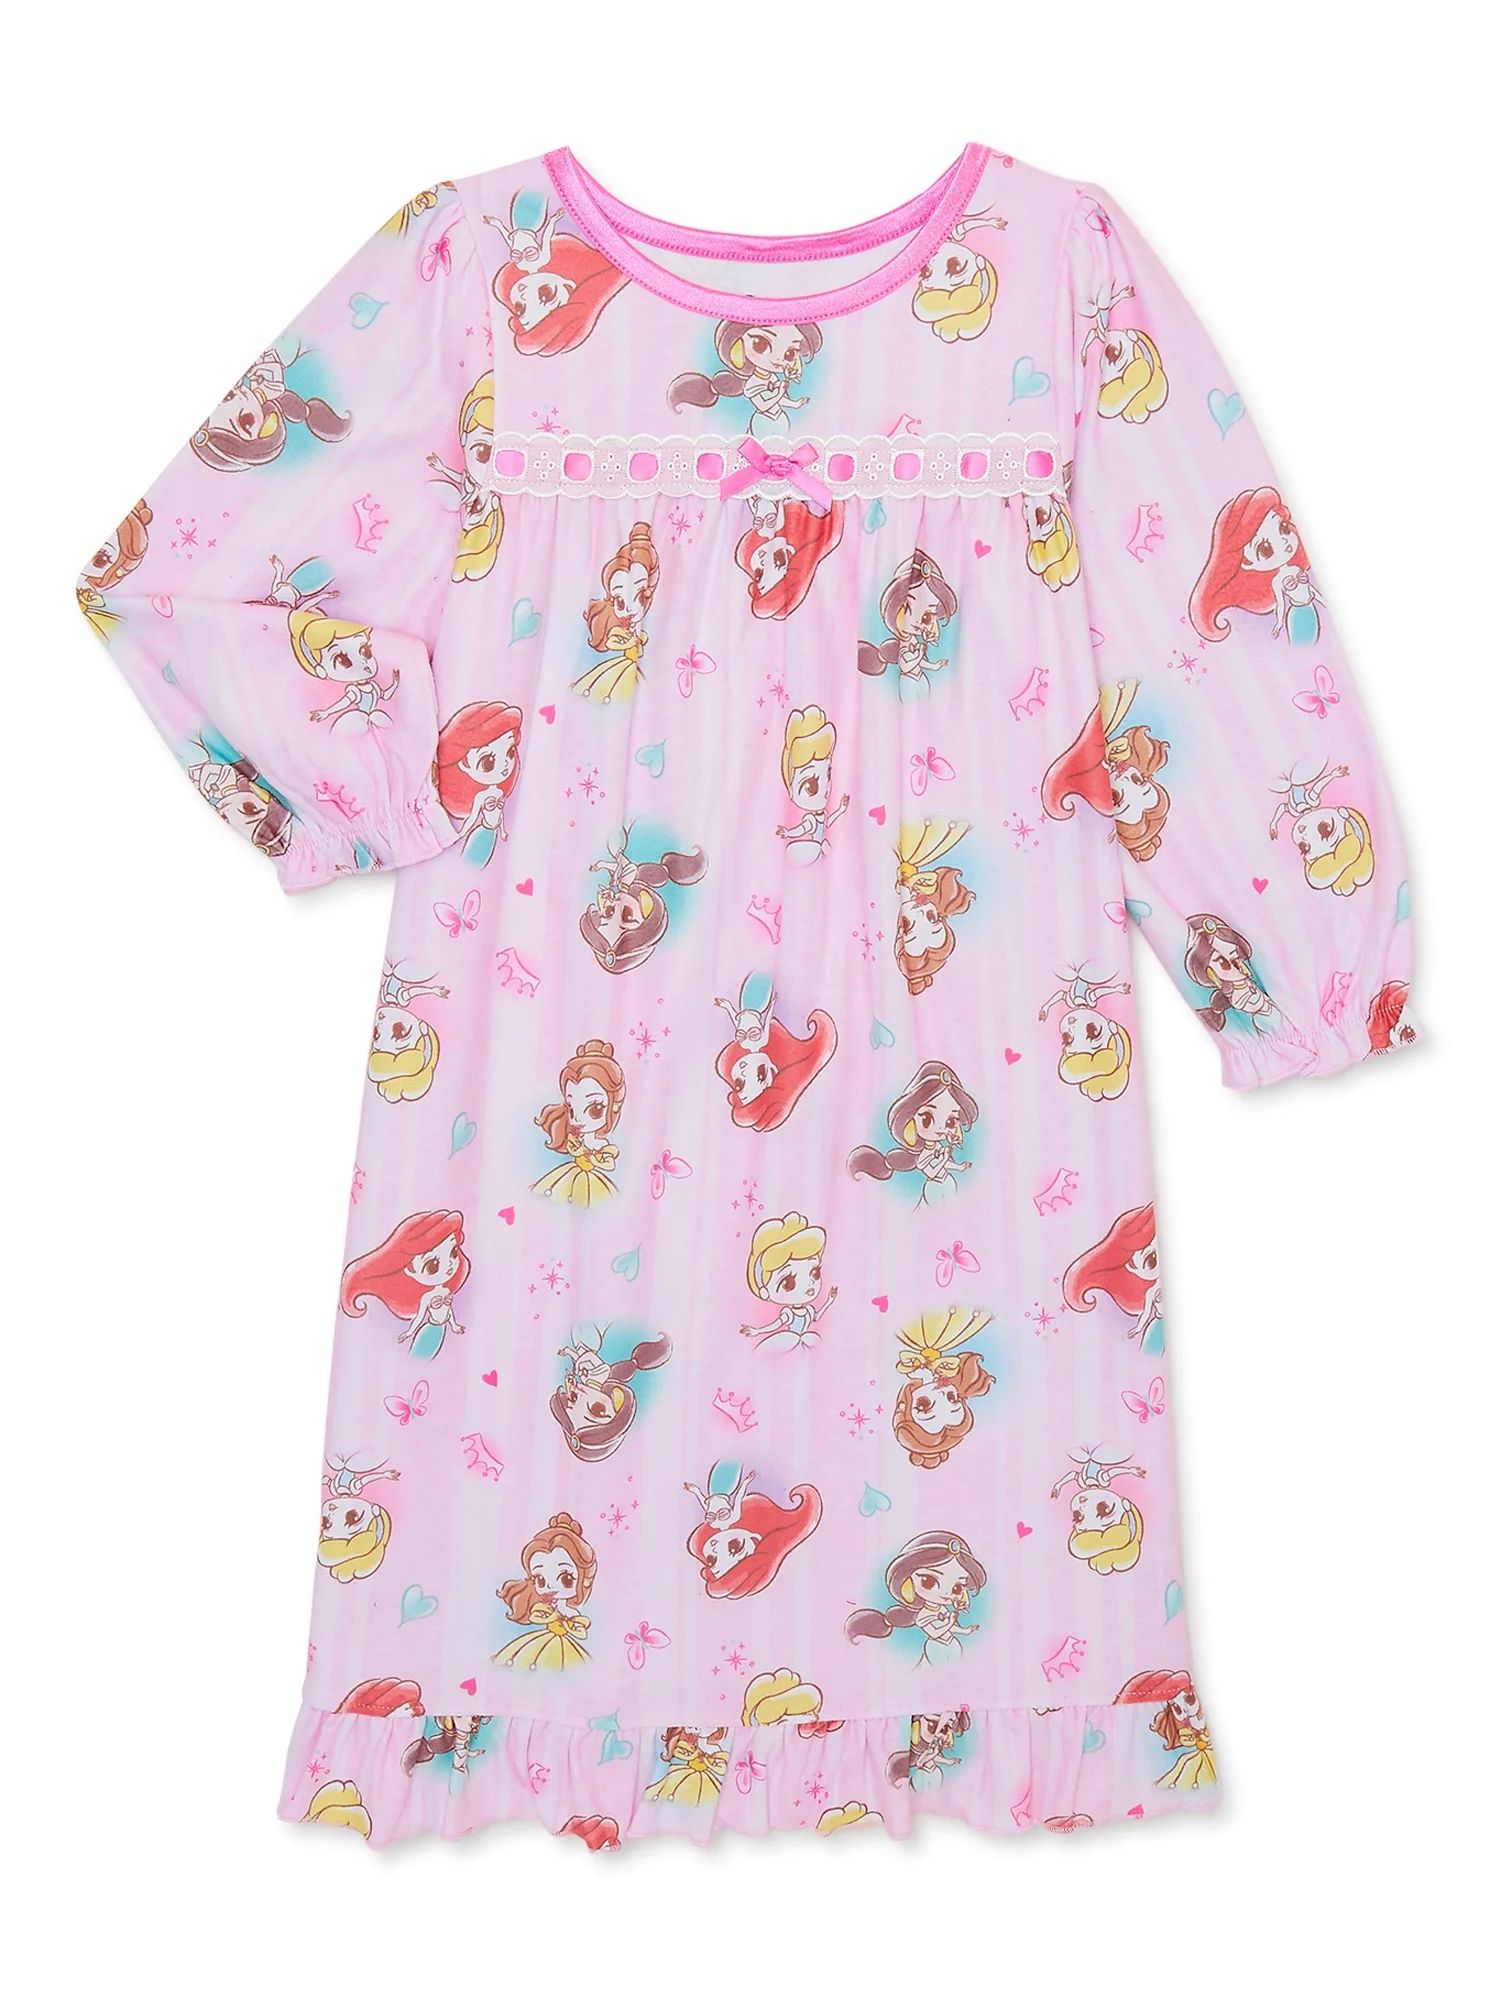 Disney Princess Toddler Girls Nightgown, Sizes 2T-5T | Walmart (US)